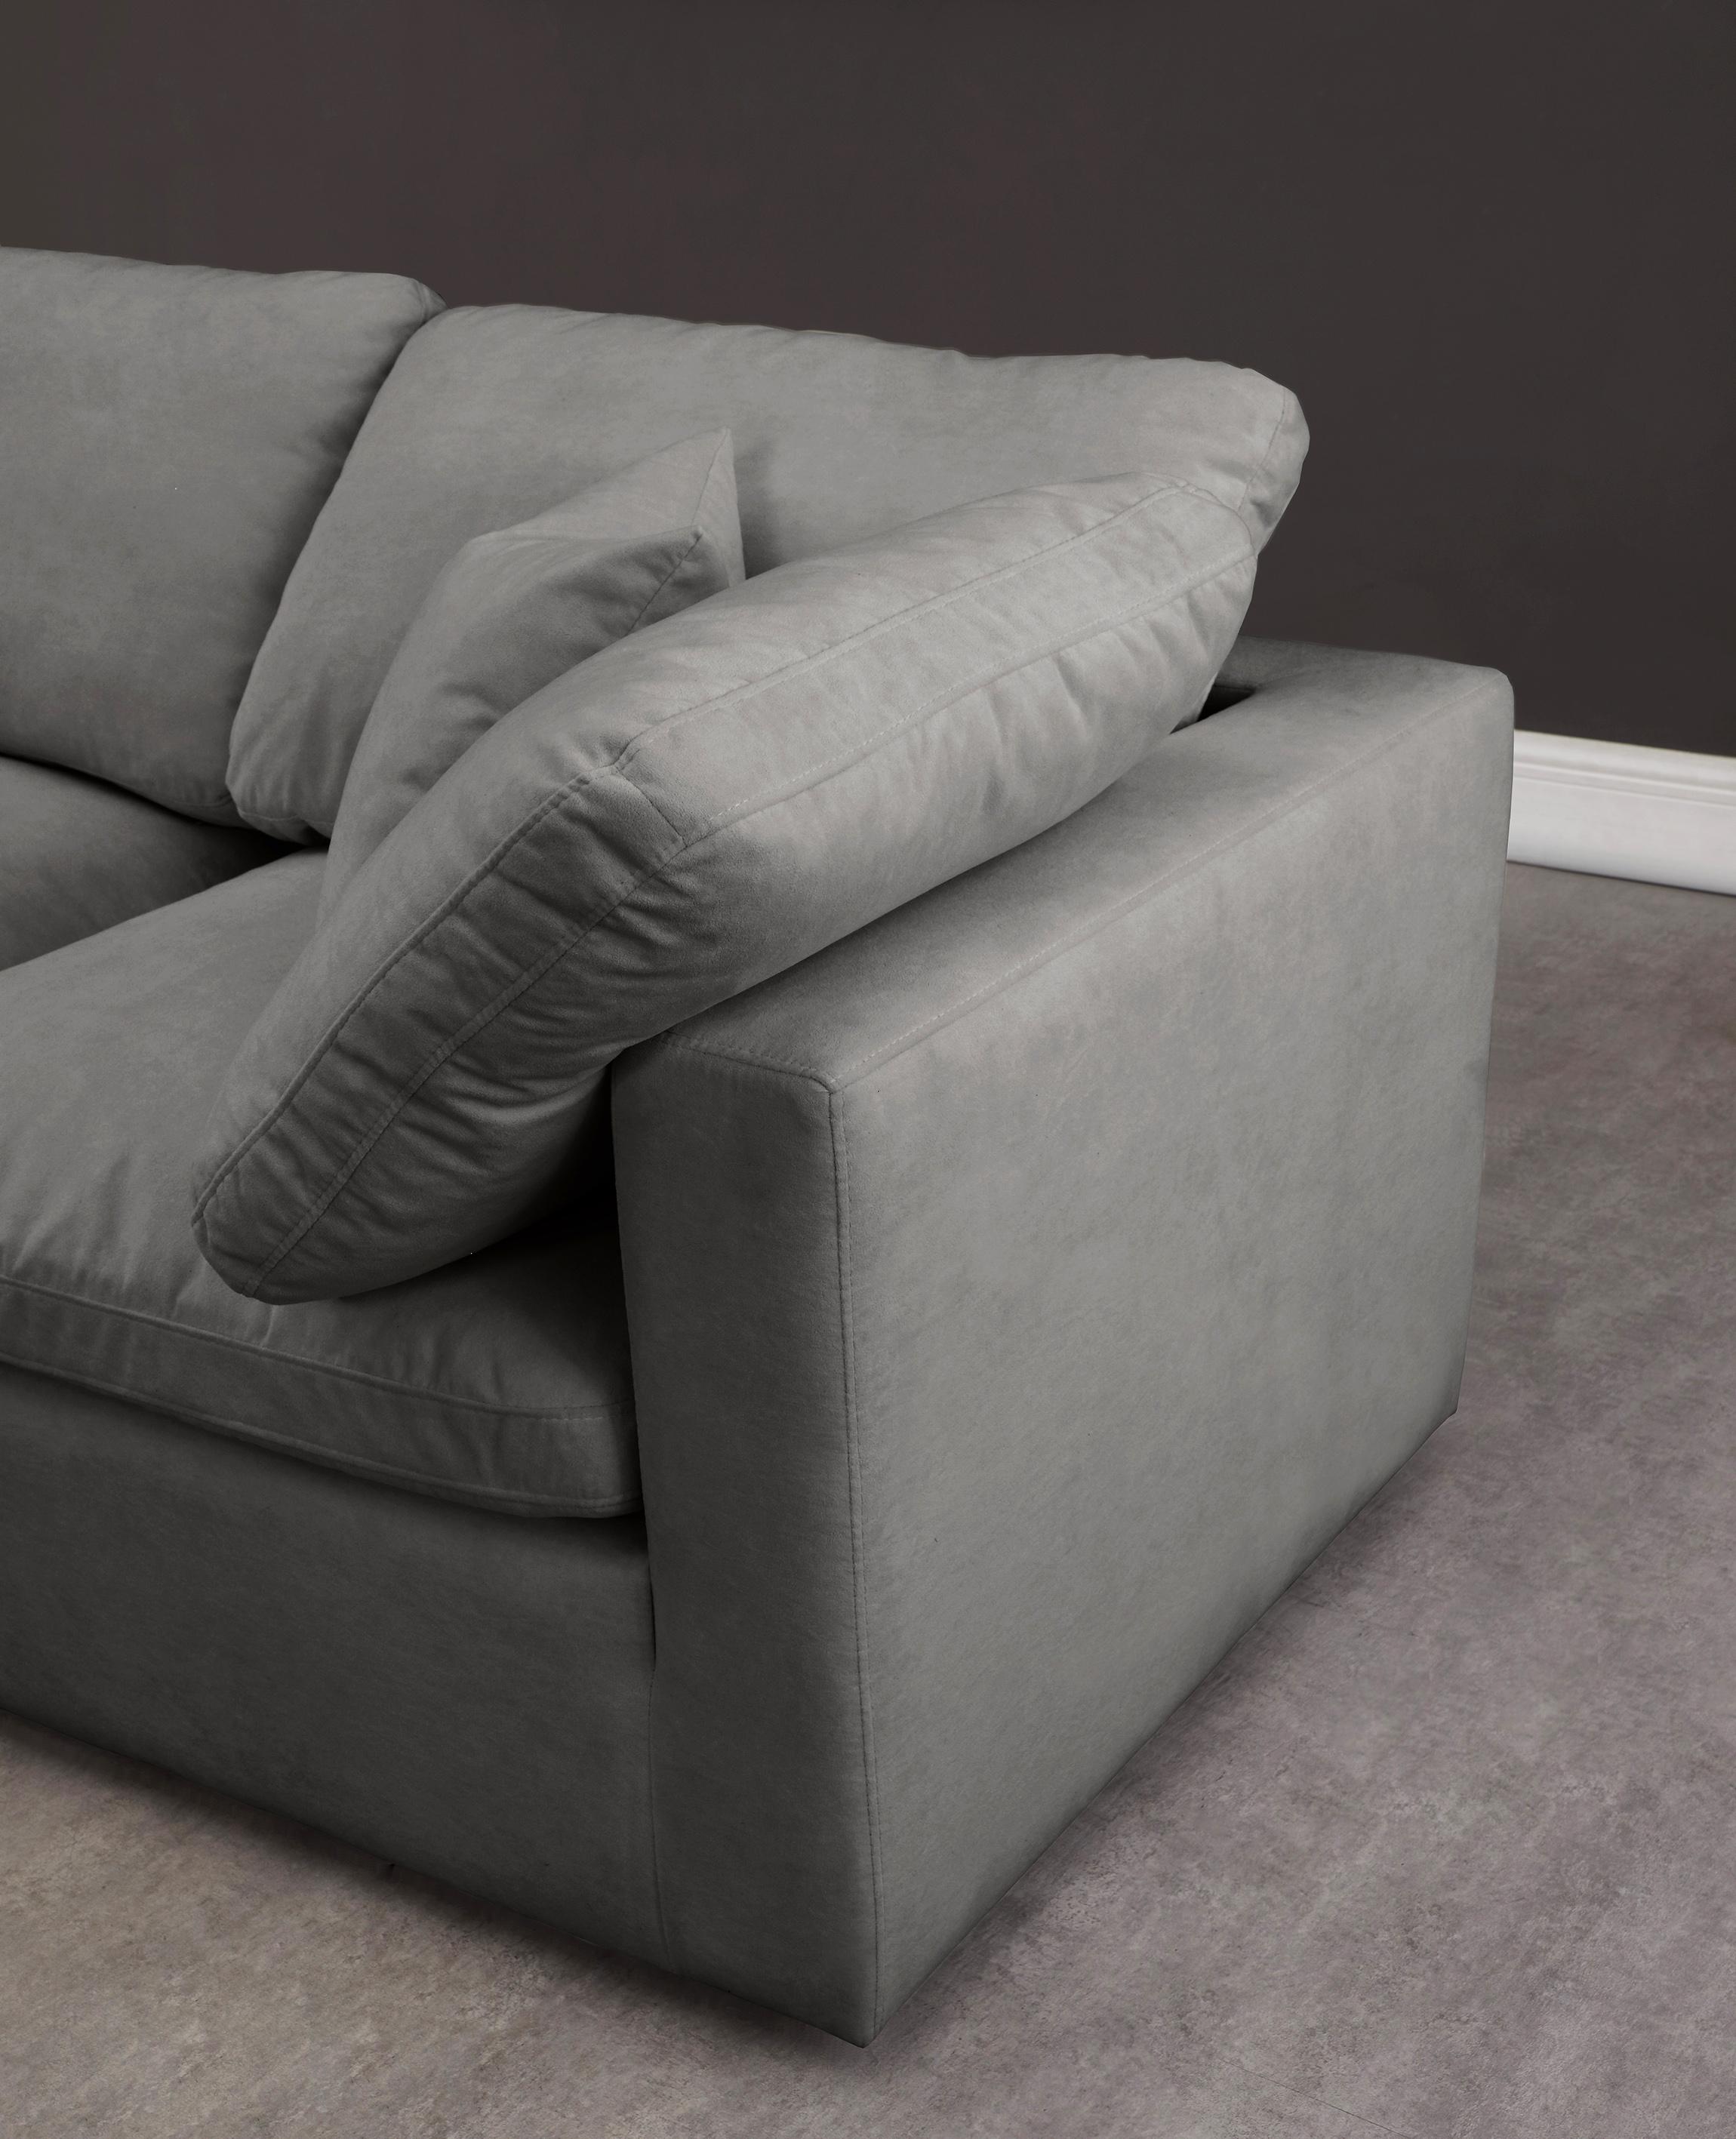 

    
602Grey-Sec7A Meridian Furniture Modular Sectional Sofa
